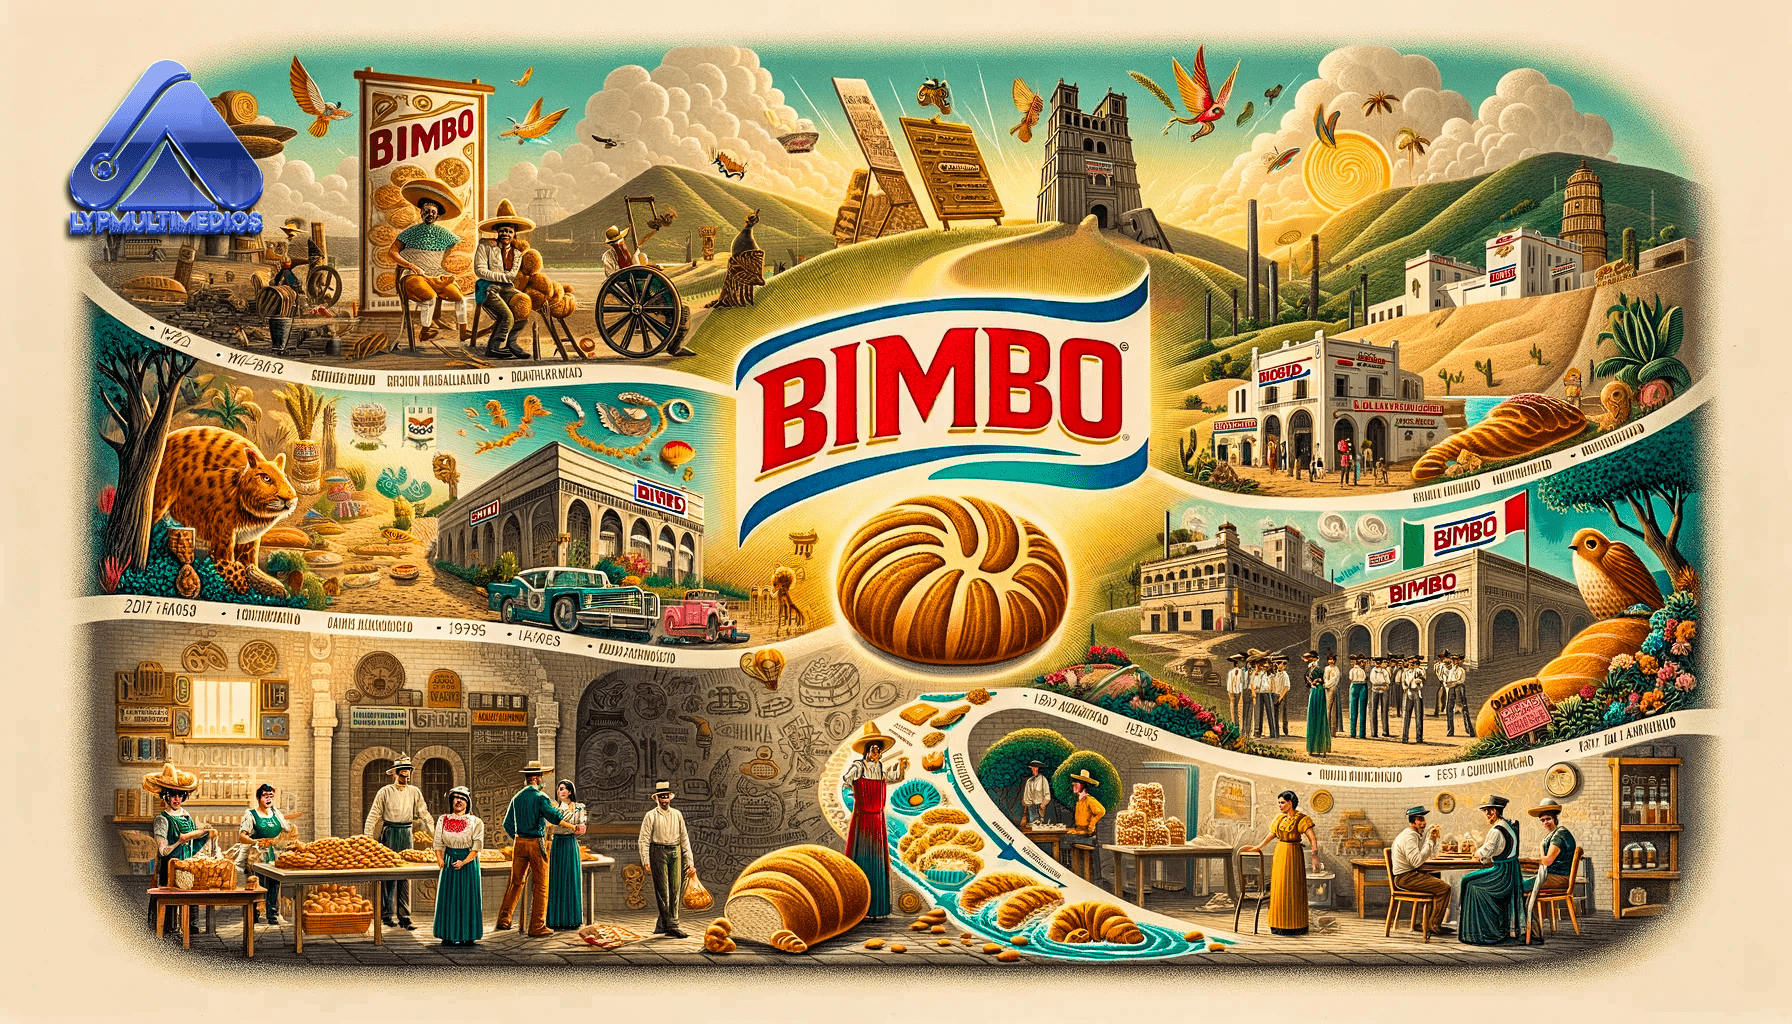 Historia de Bimbo: Un Ícono Mexicano de Valores y Éxito Empresarial